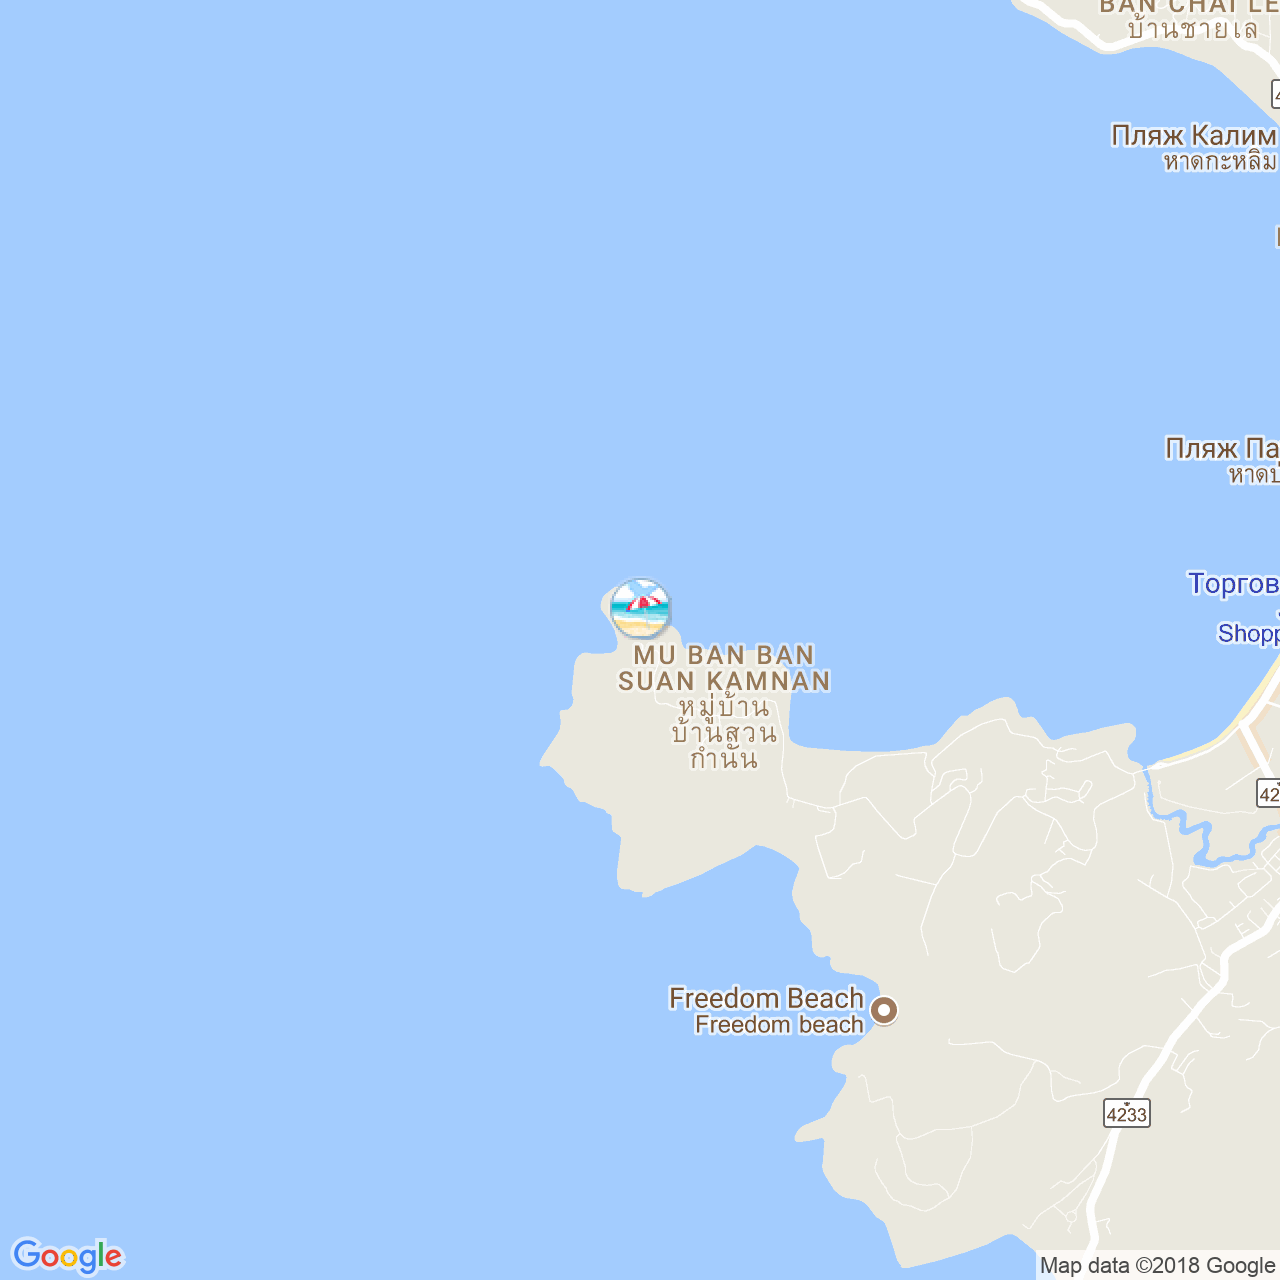 Пляж Парадайз на карте Пхукета